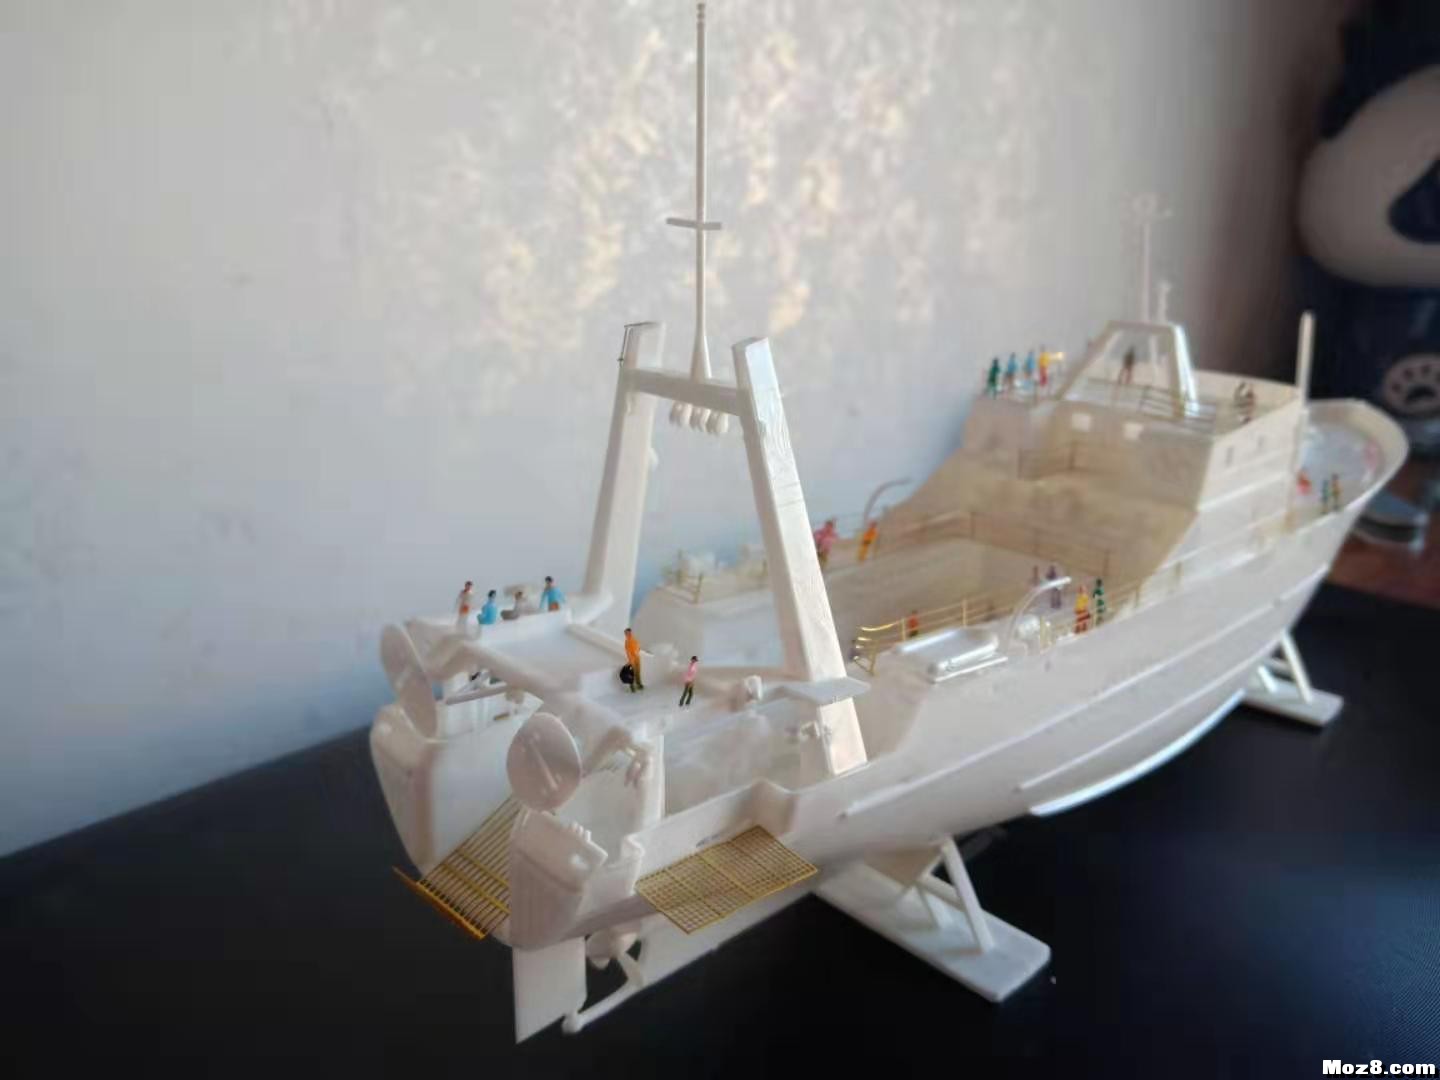 1/200模型船 手工轮船模型,轮船的模型 作者:沙发上的土豆 8960 